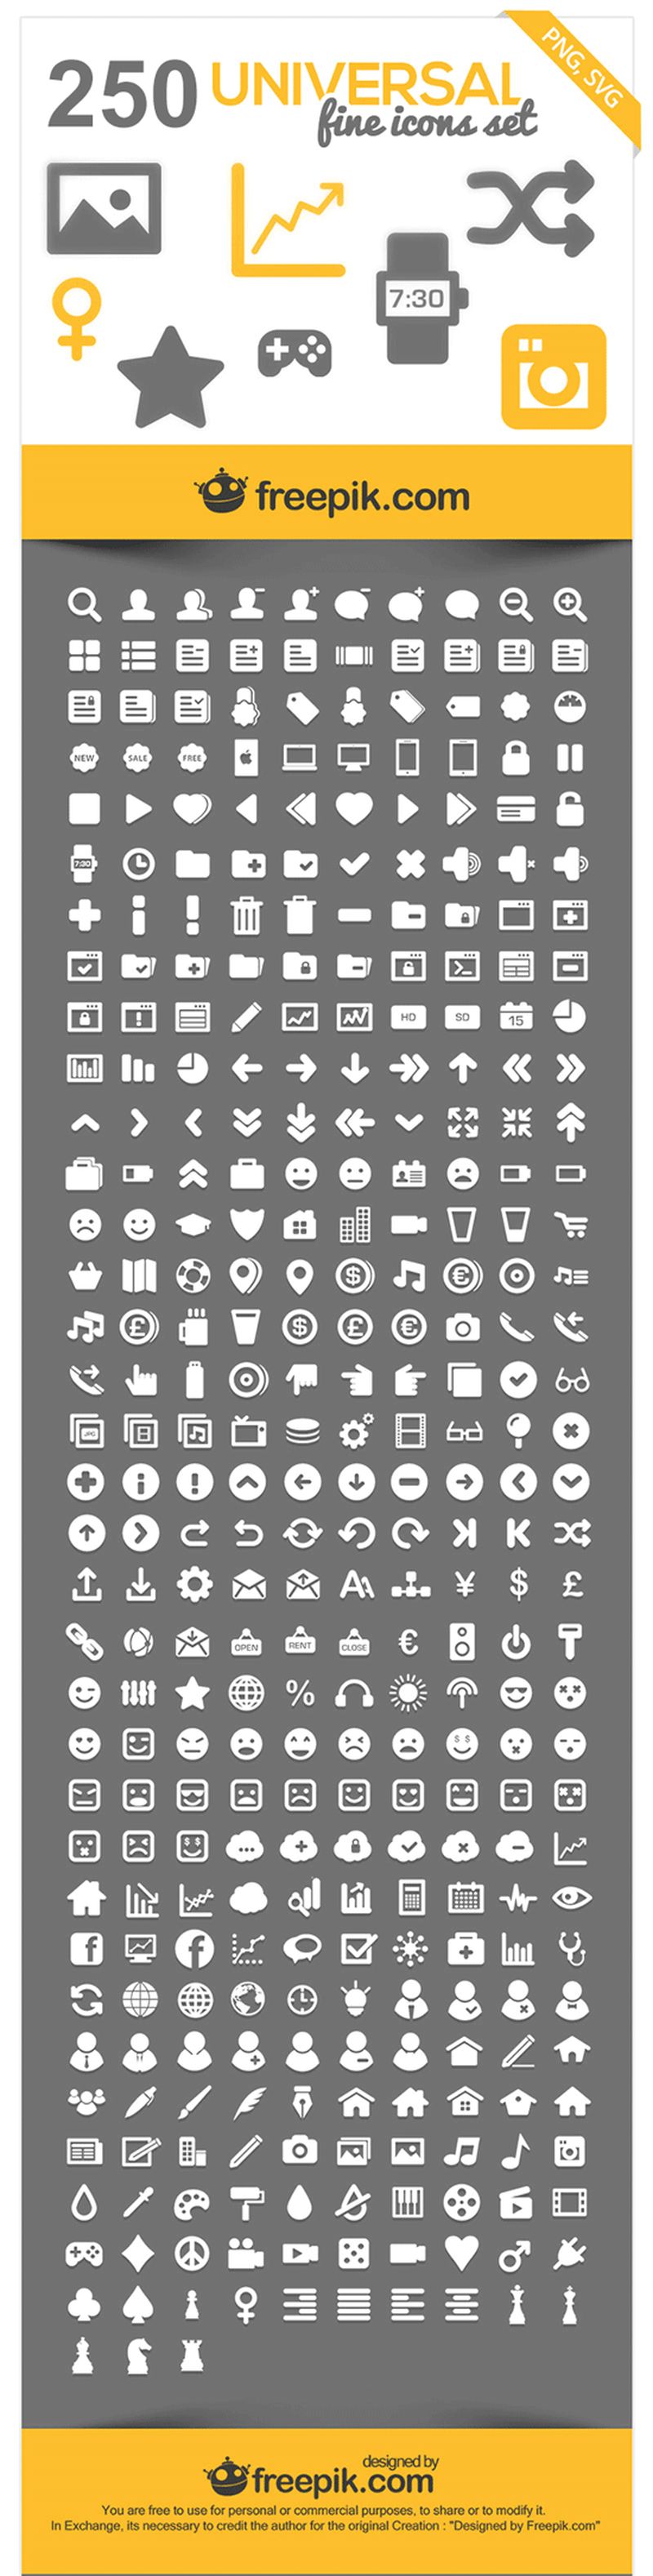 Free Universal Icons: enorme colección de iconos gratis de todas las temáticas